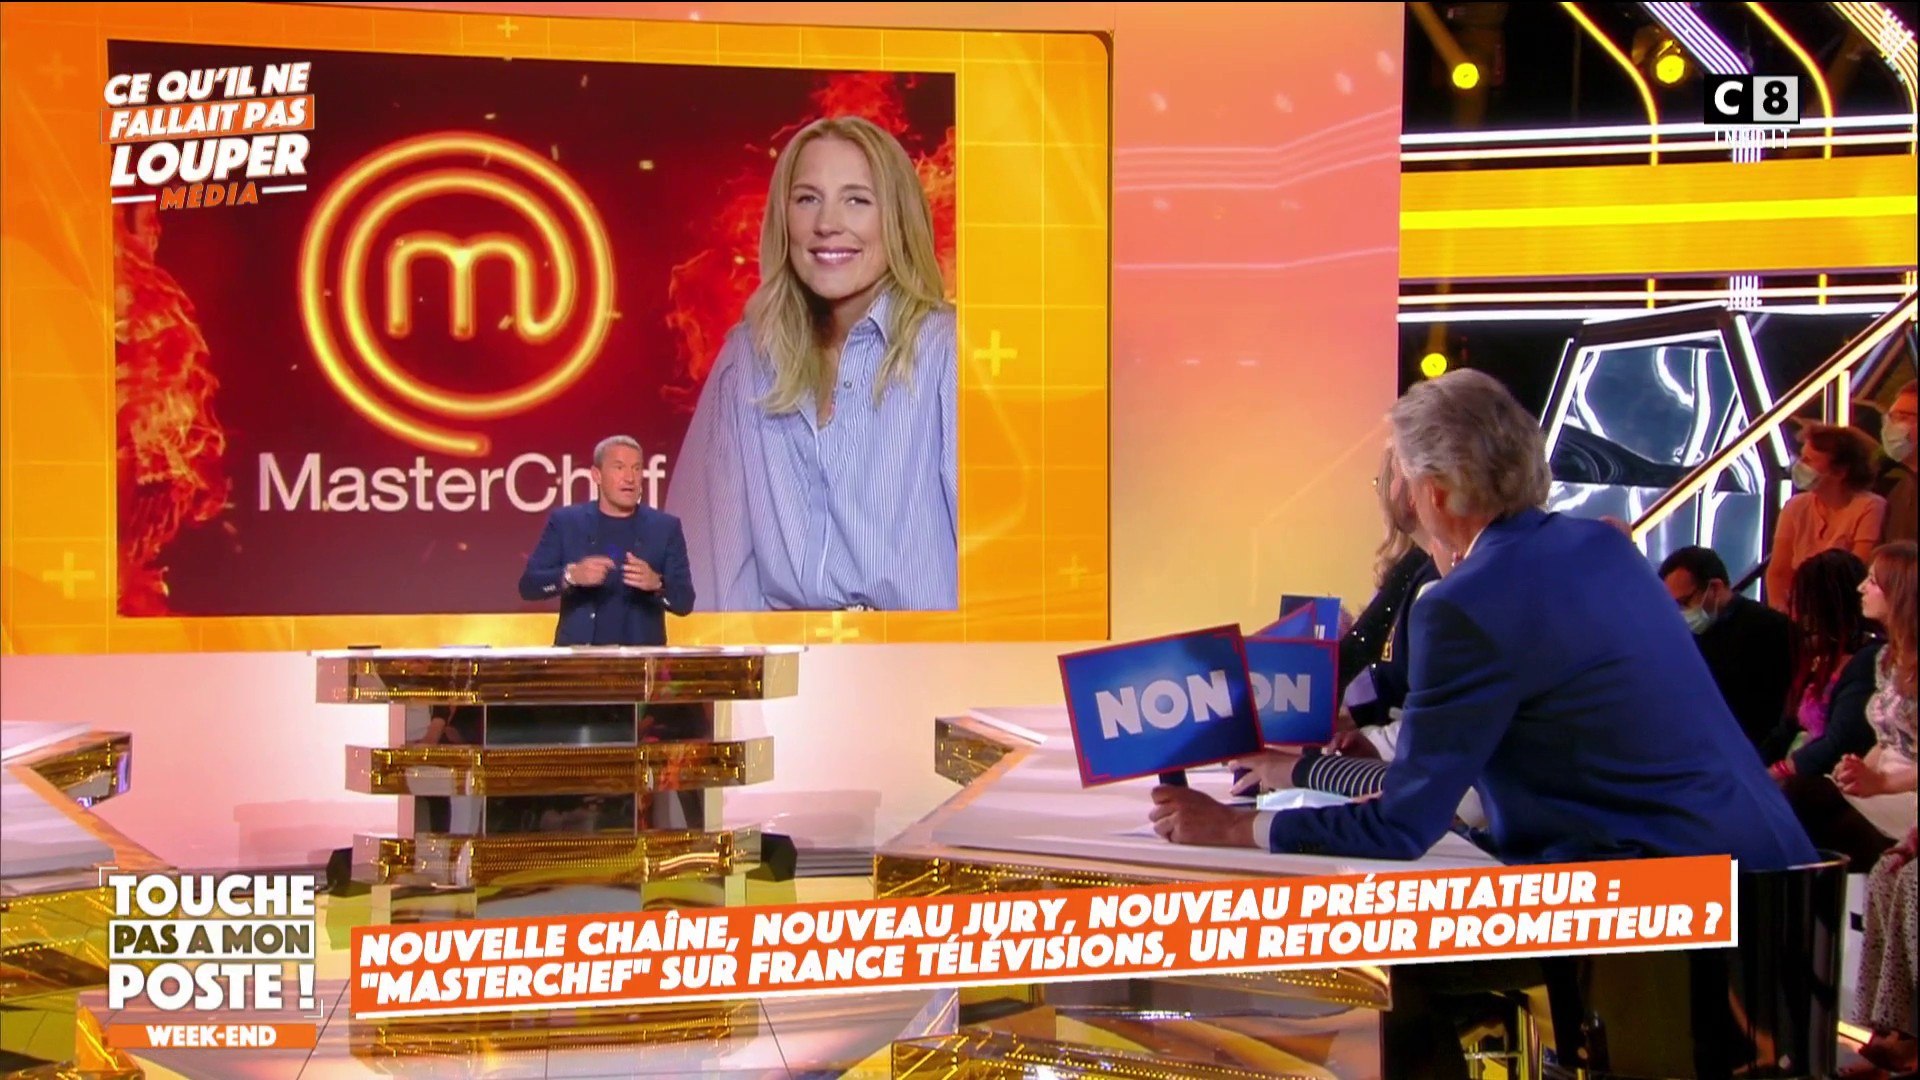 Masterchef" de retour sur France Télévisions ! - Vidéo Dailymotion